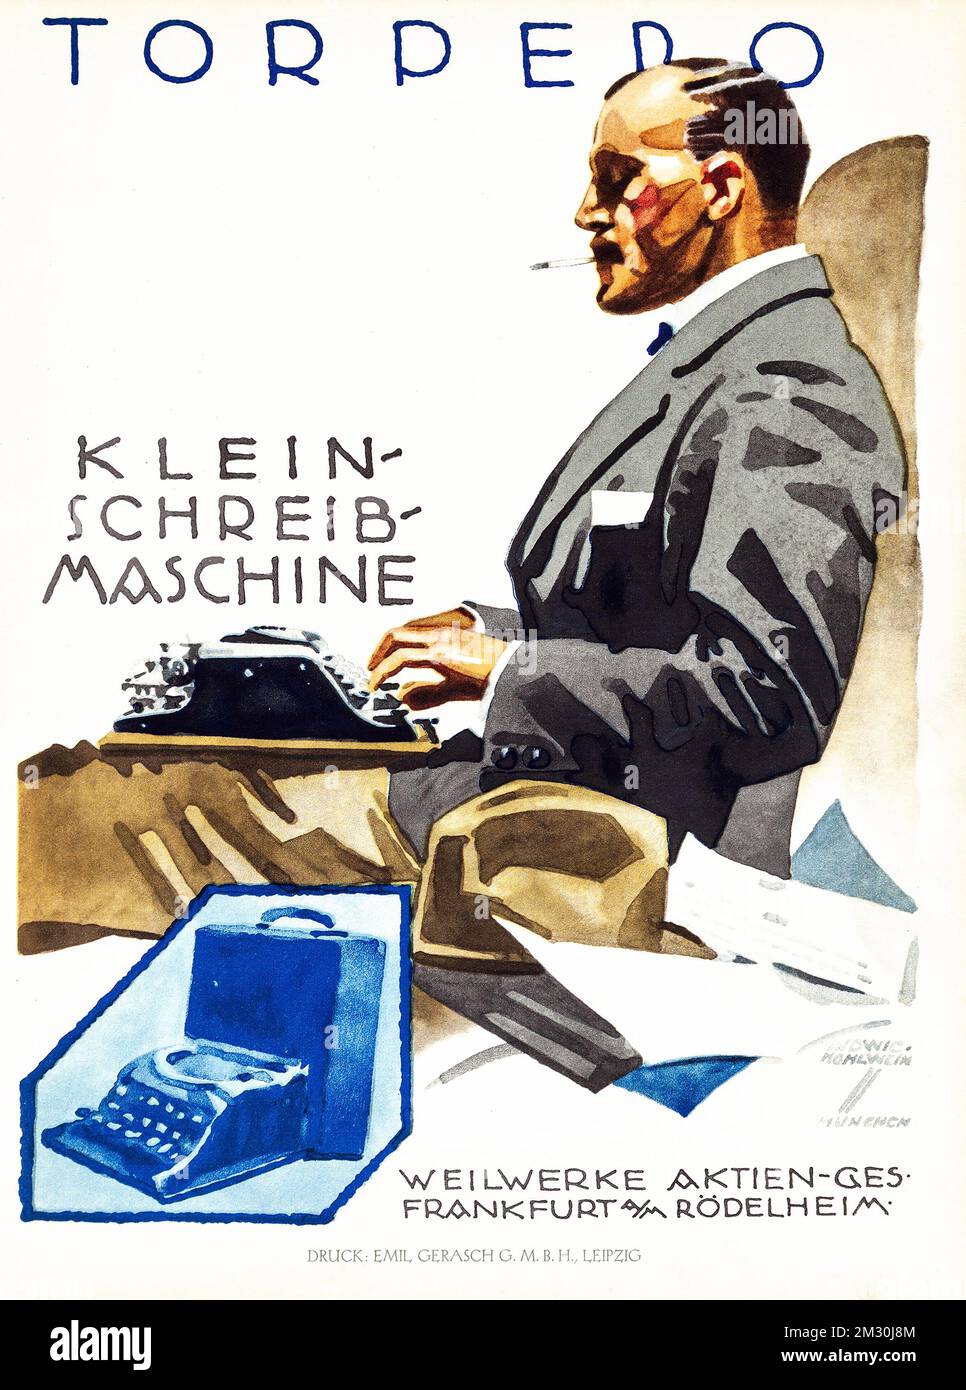 klassisches deutsches Poster - Werbetoster für Torpedo-Schreibmaschinen - Klein-Schreib Maschine Torpedo 1920er - Ludwig Hohlwein-Poster Stockfoto